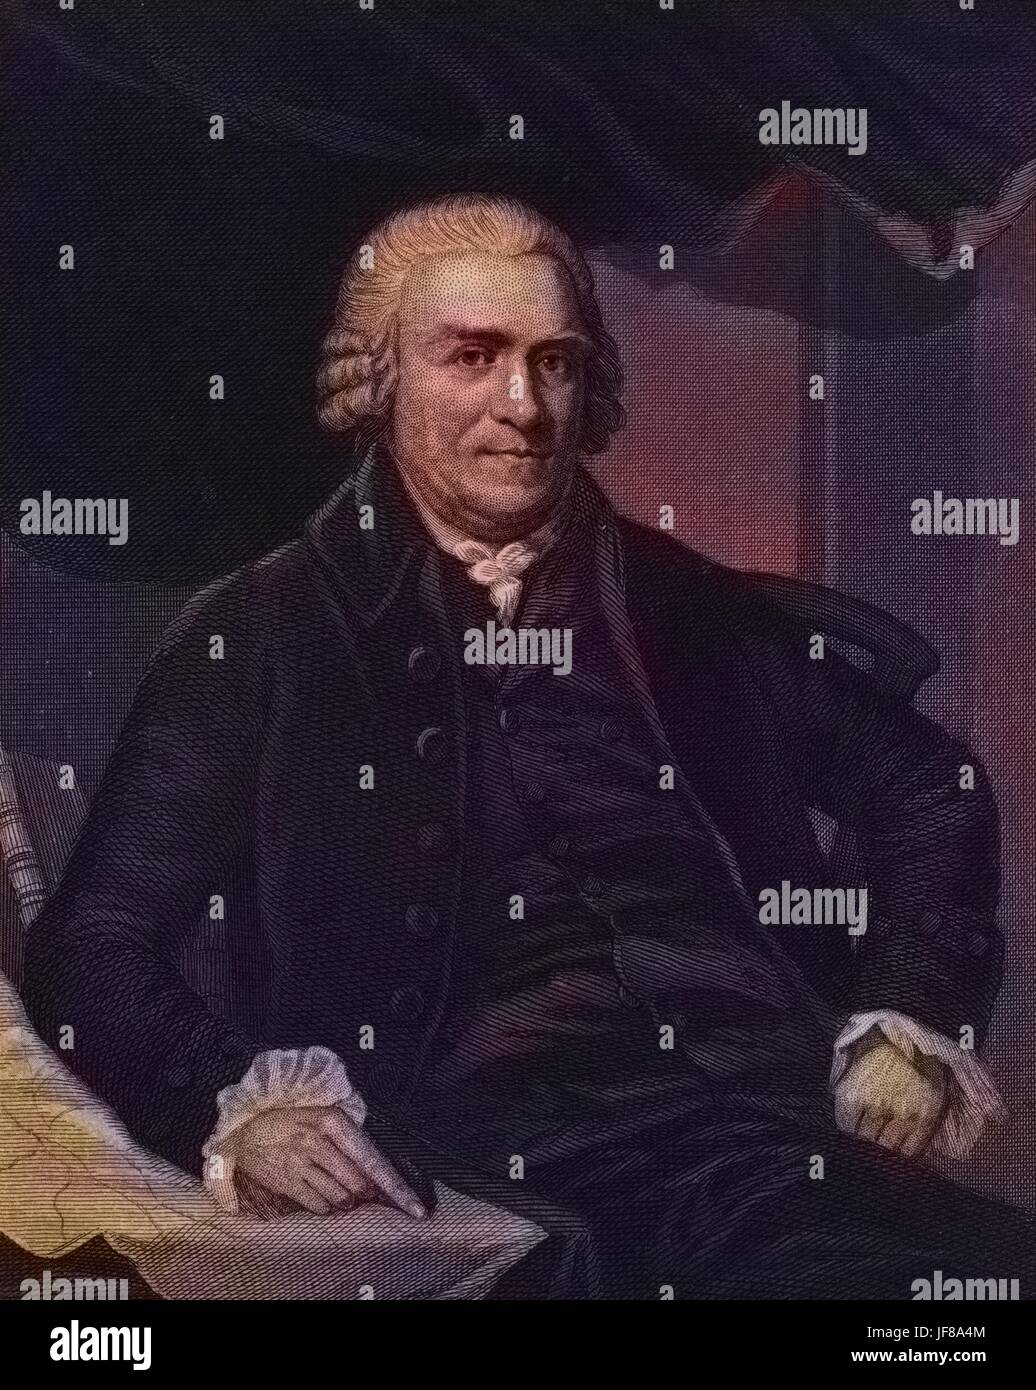 Porträt von Samuel Adams, politischer Philosoph und Gründervater der Vereinigten Staaten, durch Henry Bryan Hall, 1770. Von der New York Public Library. Hinweis: Bild wurde digital eingefärbt wurde mit einem modernen Verfahren. Farben können Zeit ungenau sein. Stockfoto